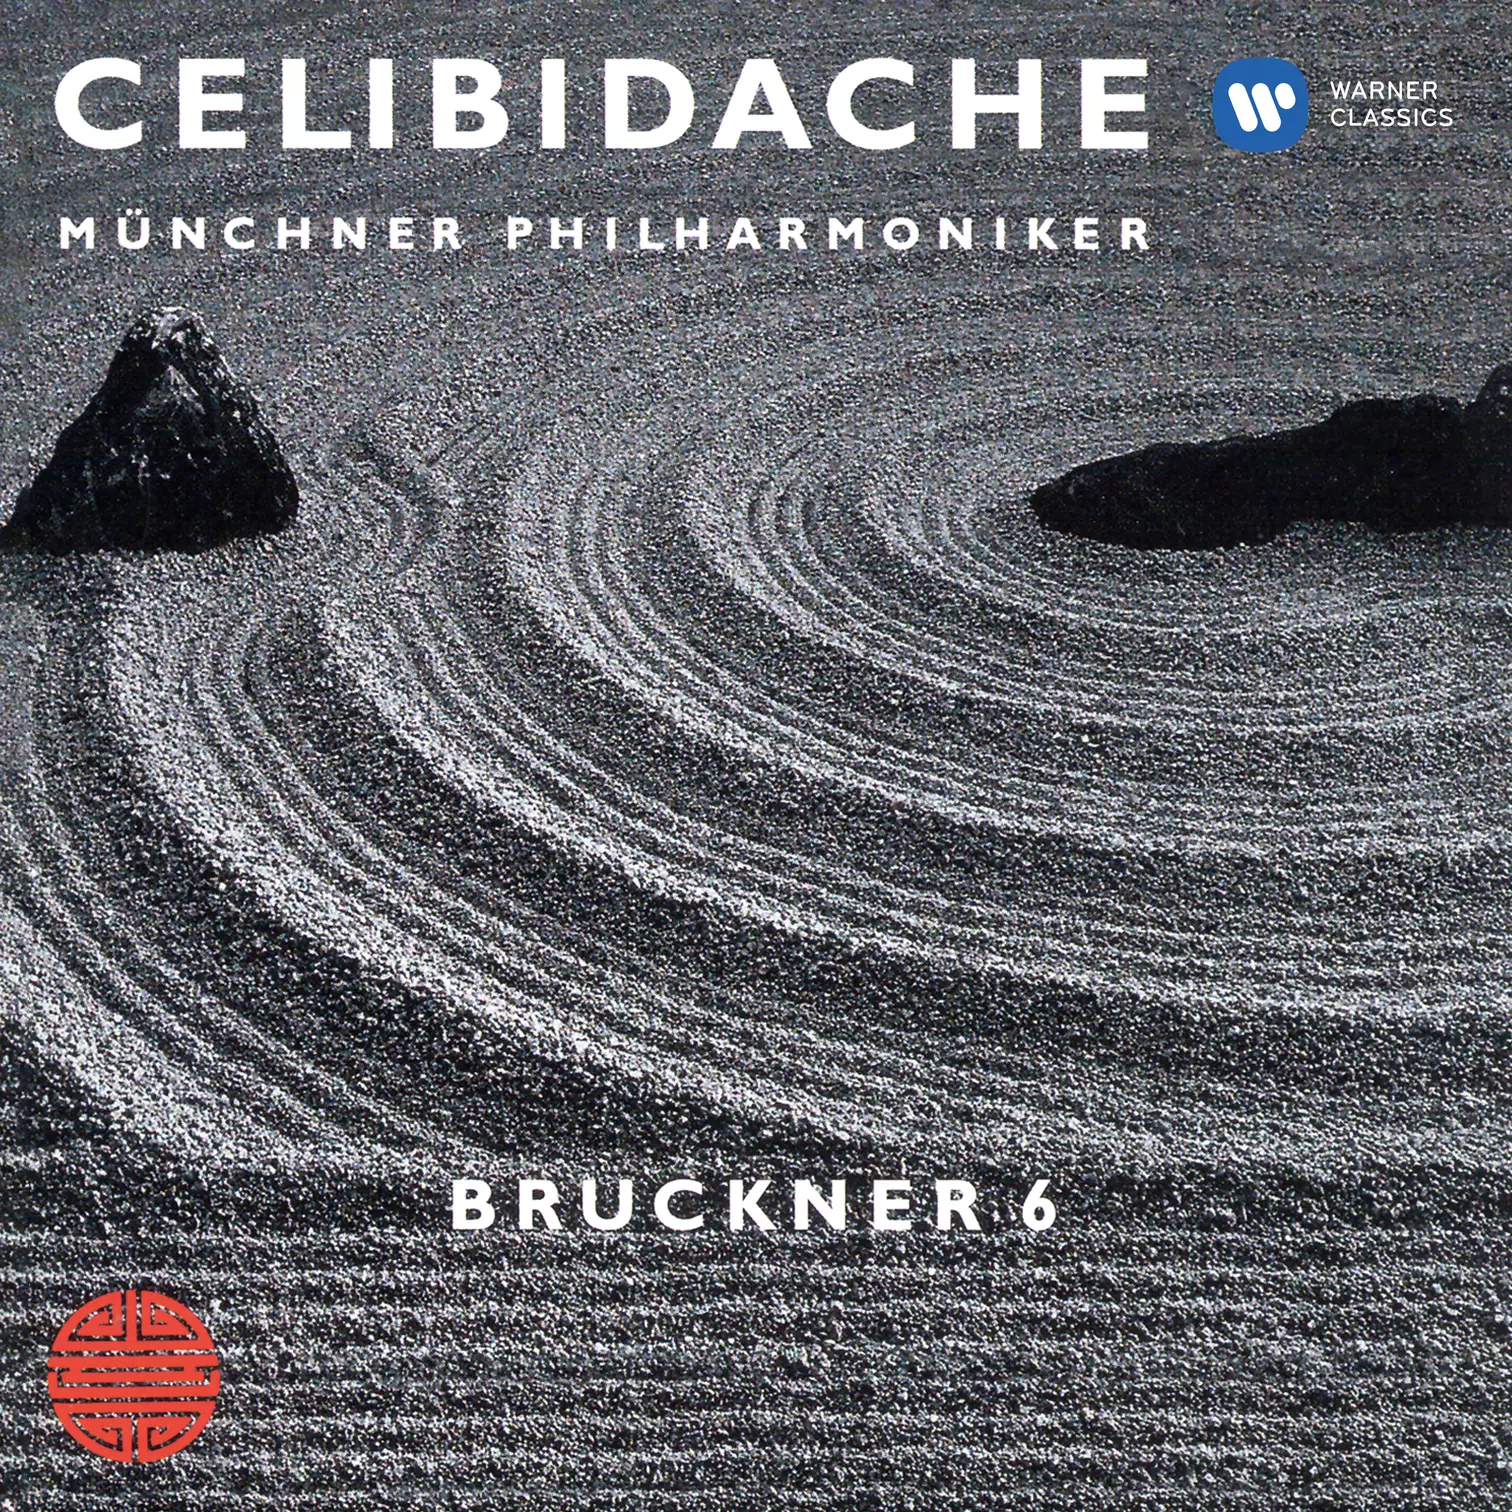 Bruckner: Symphony No. 6 (Live at Philharmonie am Gasteig, Munich, 1991)